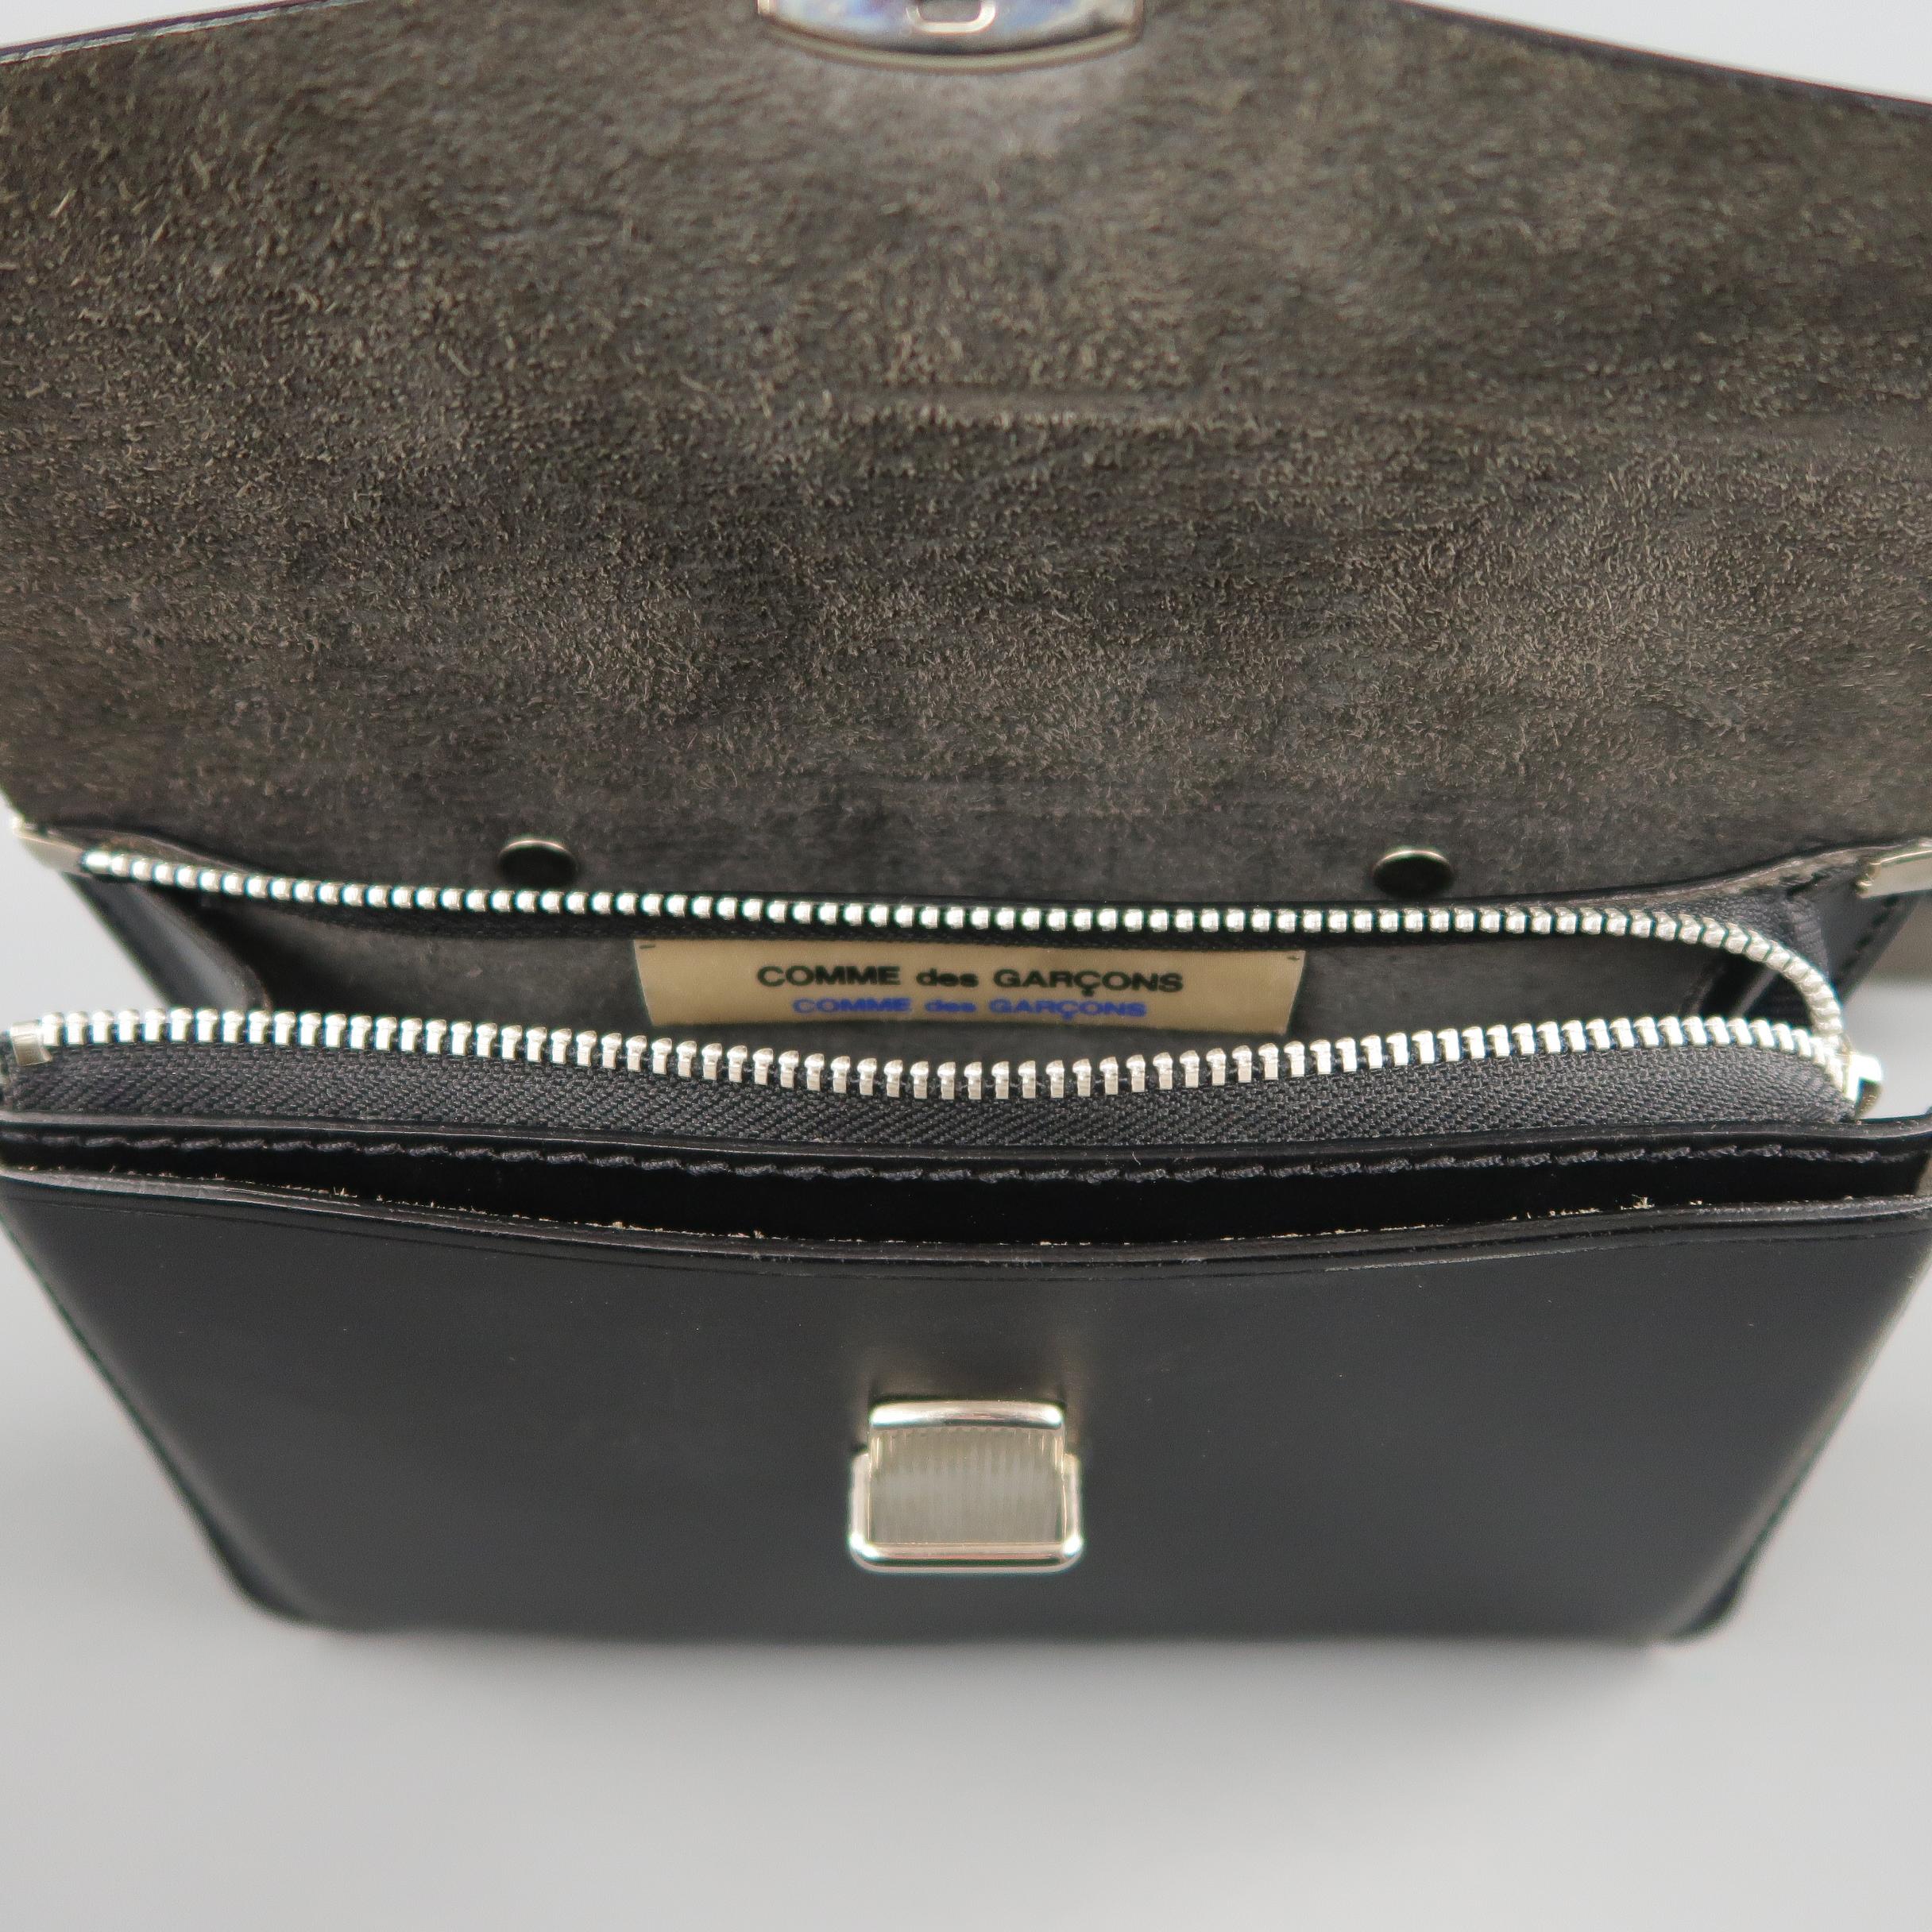 COMME des GARCONS Black Leather Mini Satchel Cross Body Handbag 3